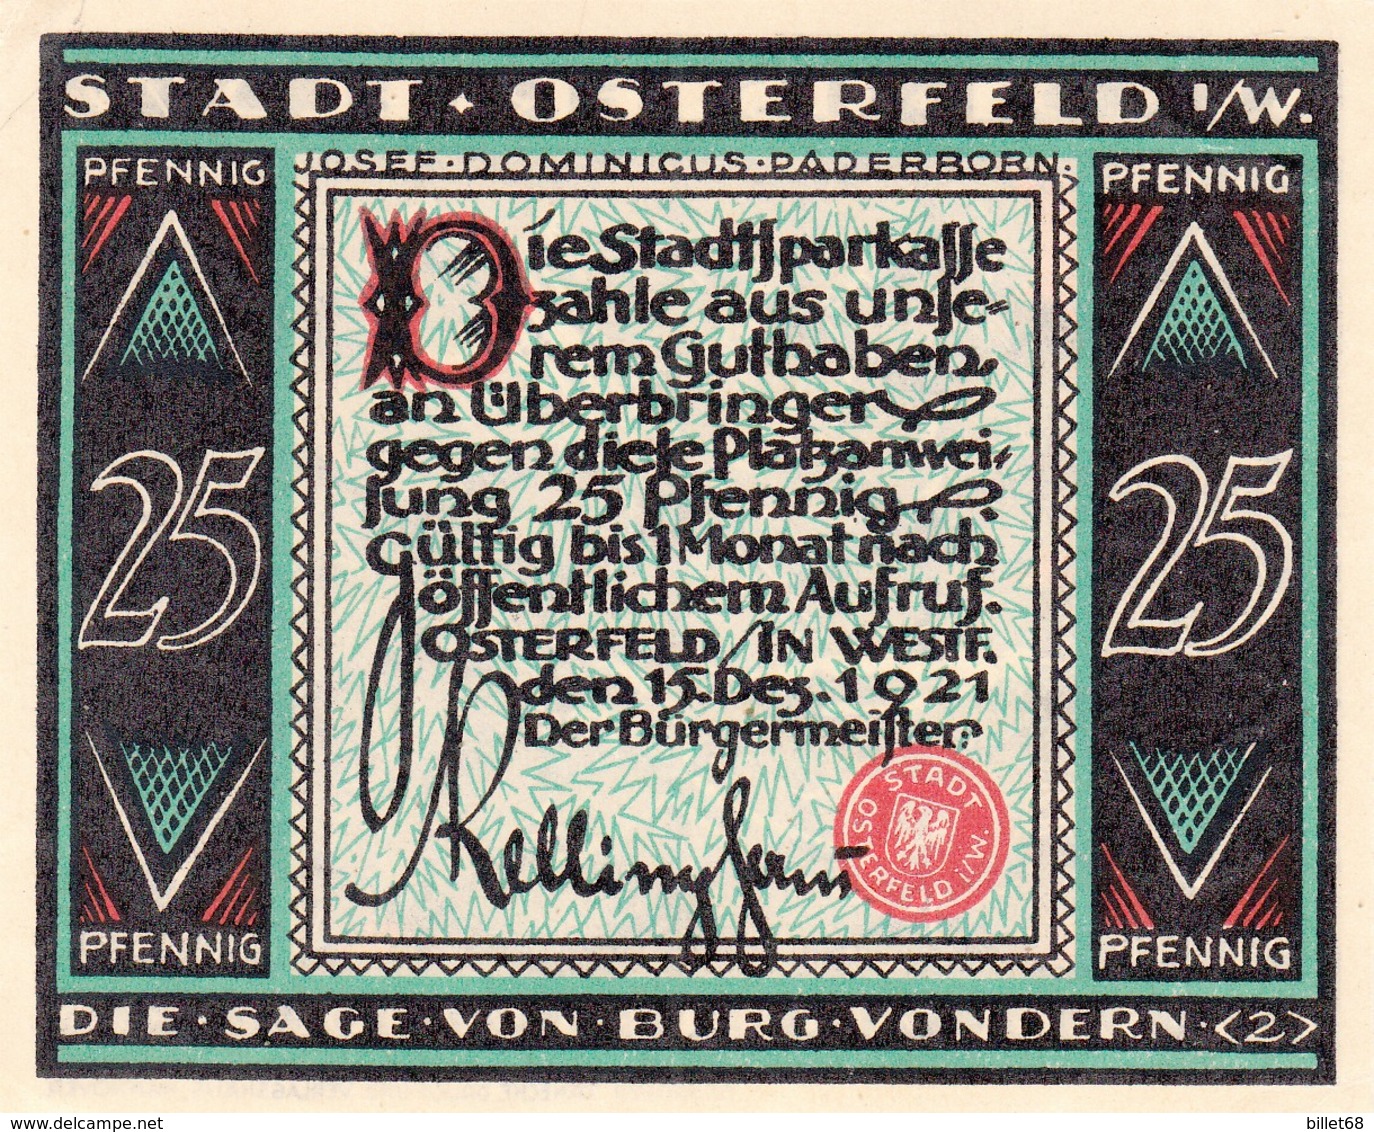 Billet Allemand - 25 Pfennig - Osterfeld In Westfalen 1921 - Die Sage Von Burg Vondern 2 - Lokale Ausgaben